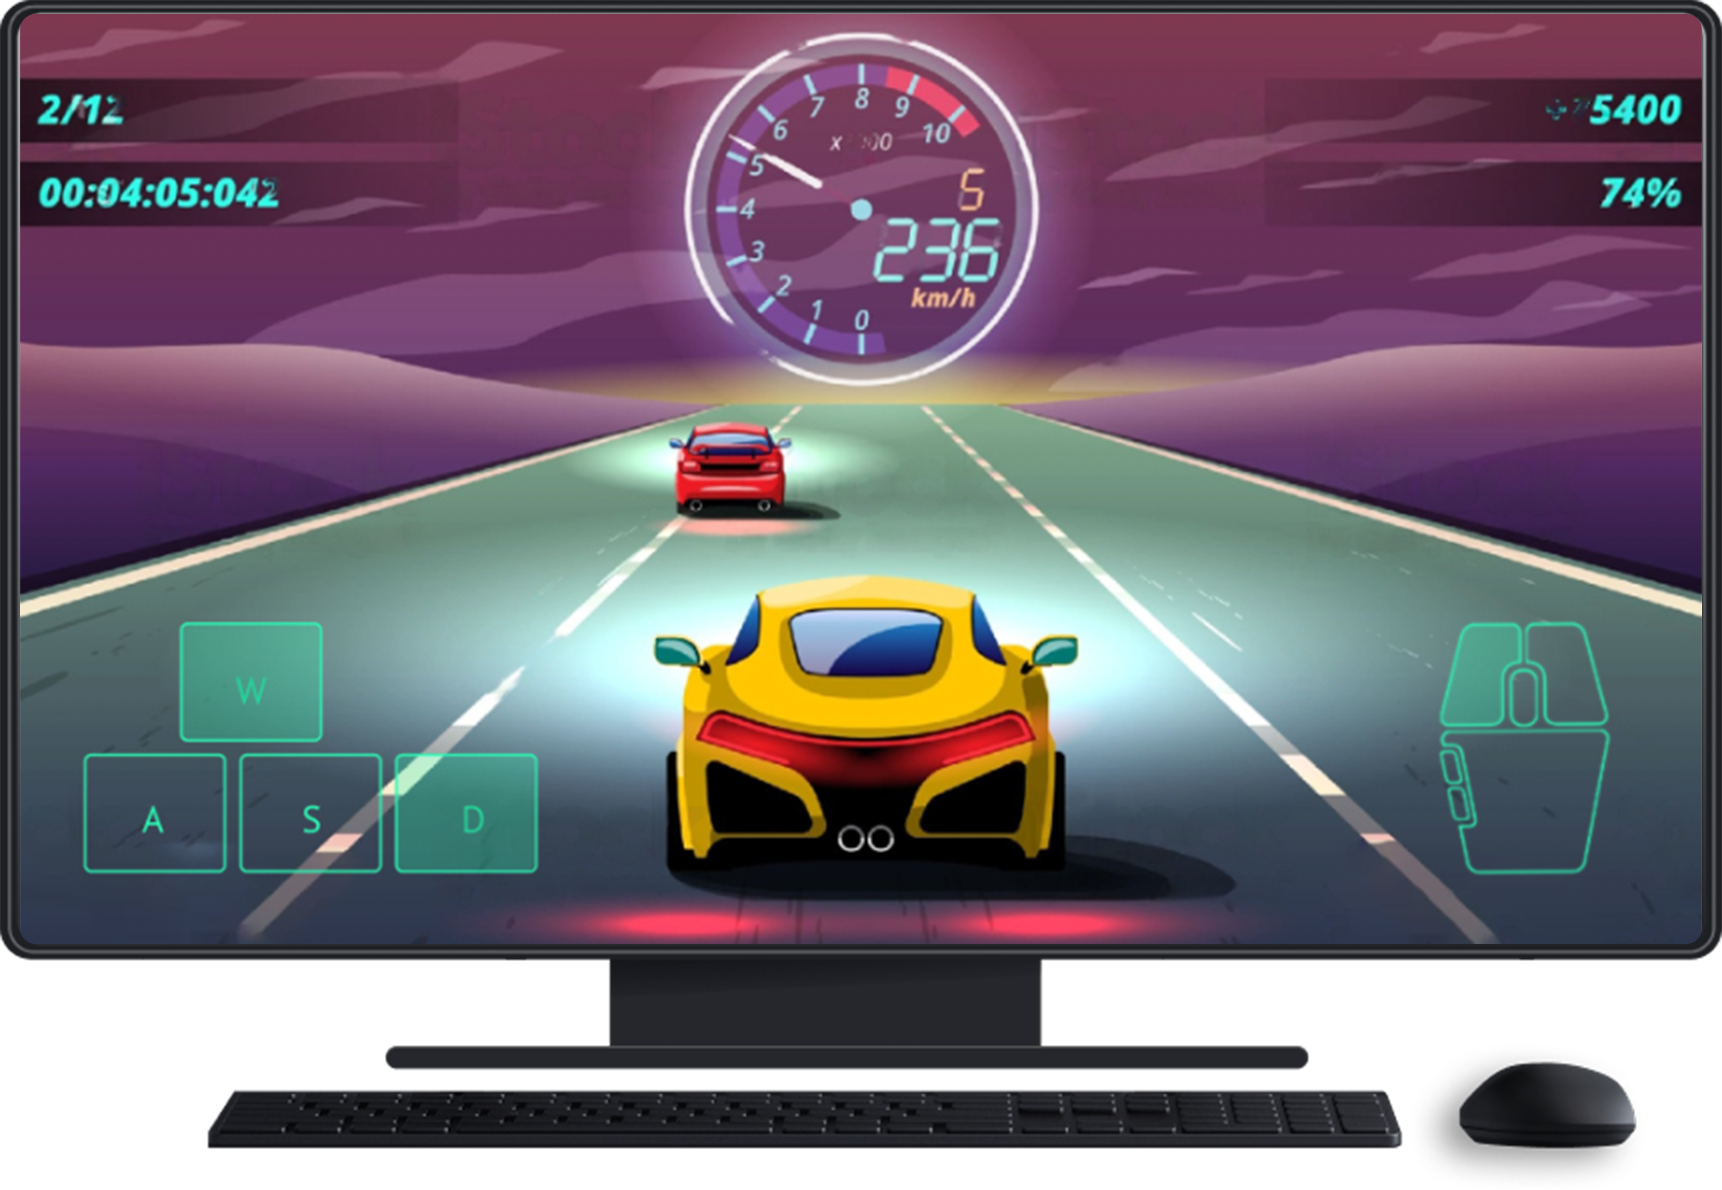 桌上型電腦，搭配鍵盤和滑鼠。遊戲畫面顯示在螢幕上，顯示用於控制方向和滑鼠的觸控螢幕輸入來源。